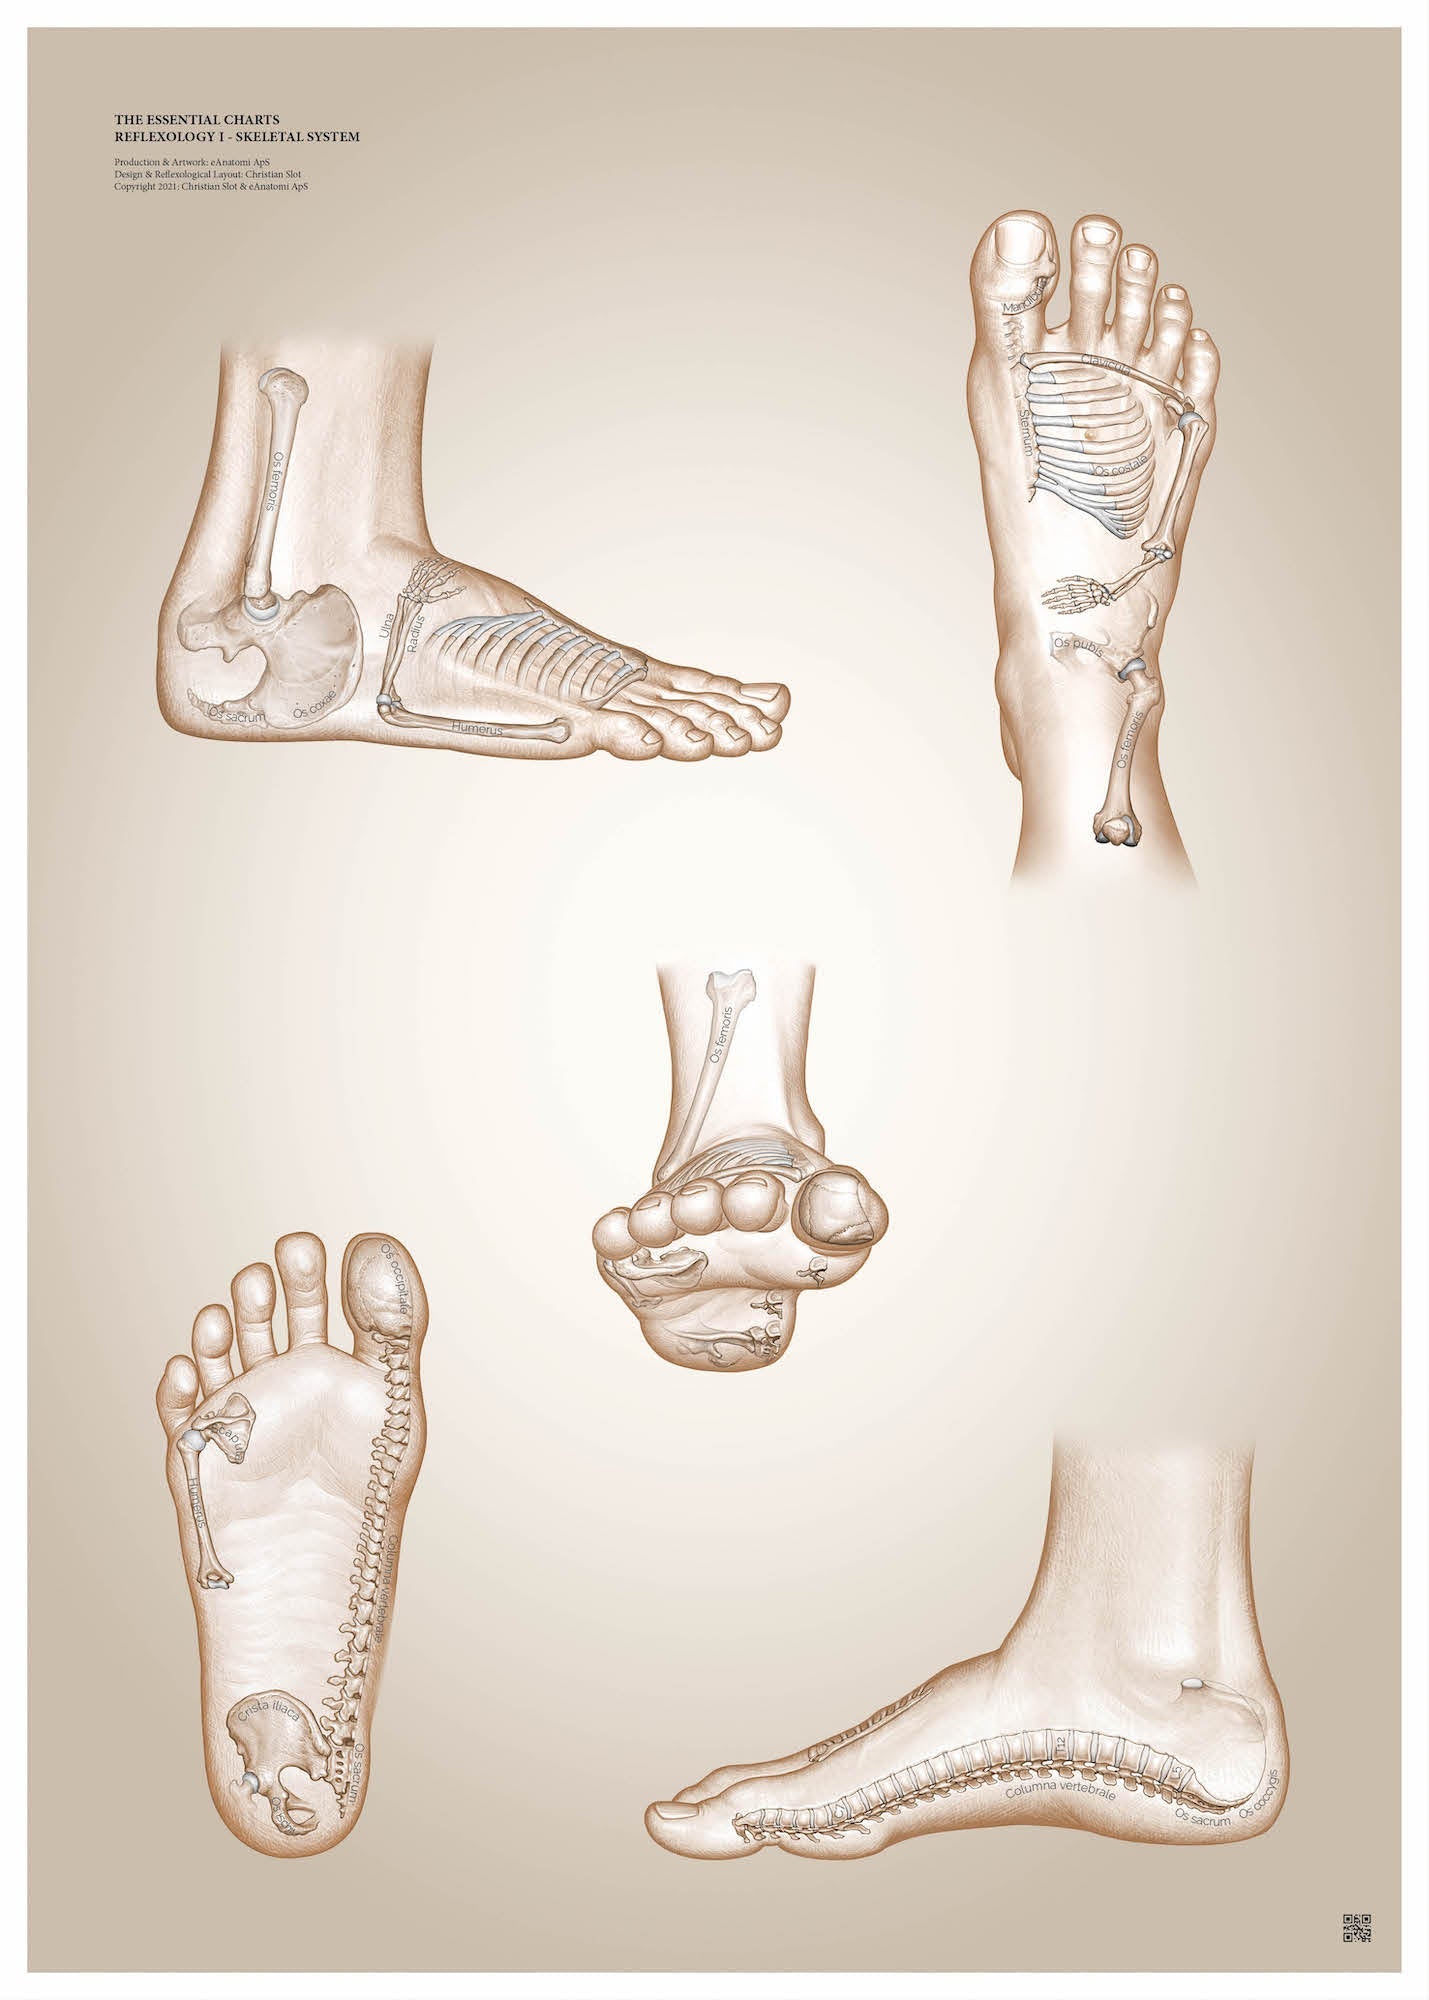 Affisch om muskelzonterapi - Skelettsystemet av Christian Slot